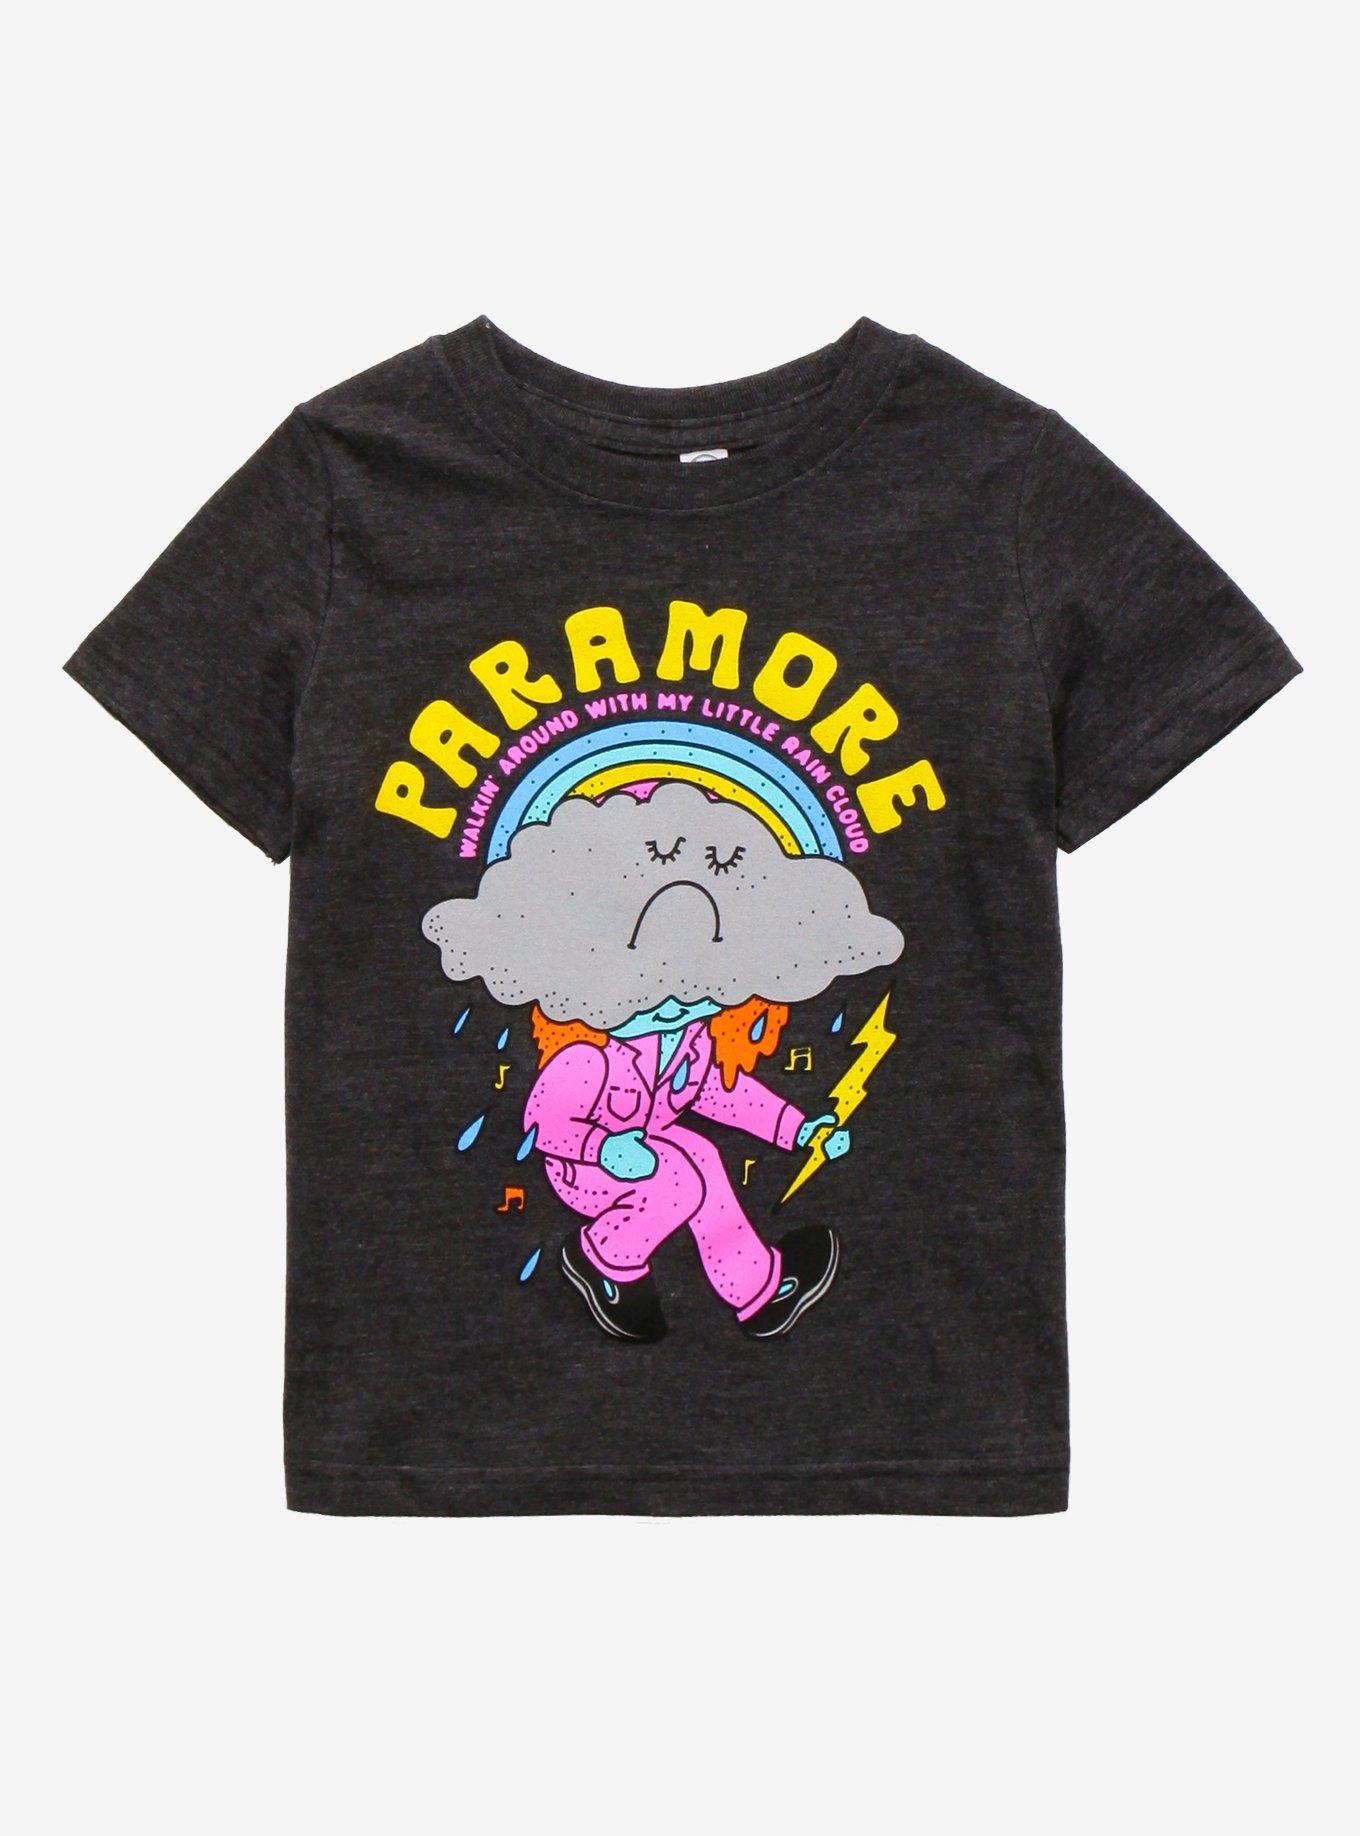 Paramore Hard Times Toddler T-Shirt